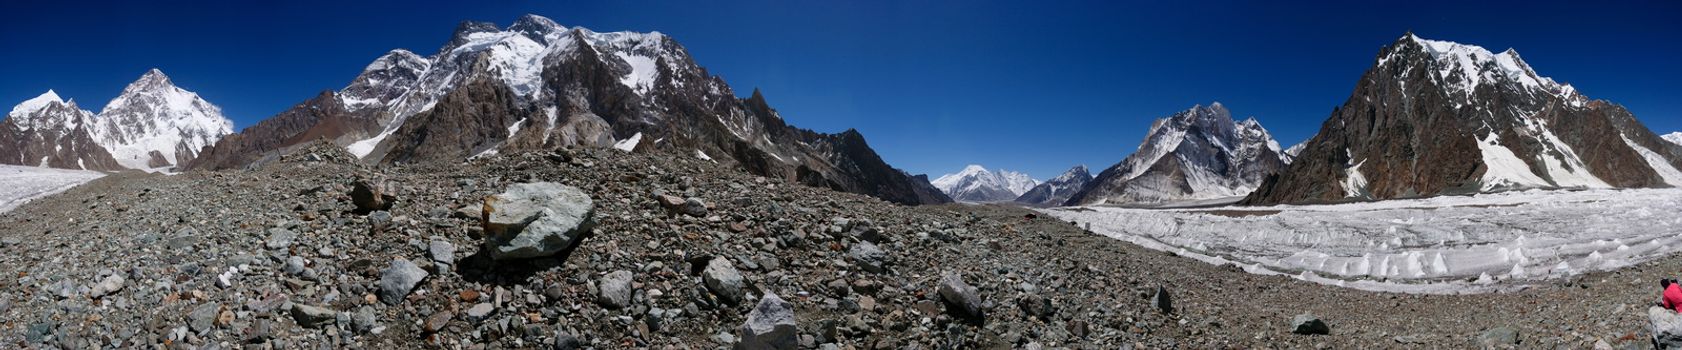 K2 and Karakorum Peaks Panorama at Concordia Pakistan. K2 Broad Peak and Gasherbrum IV towering above Baltoro Glacier.